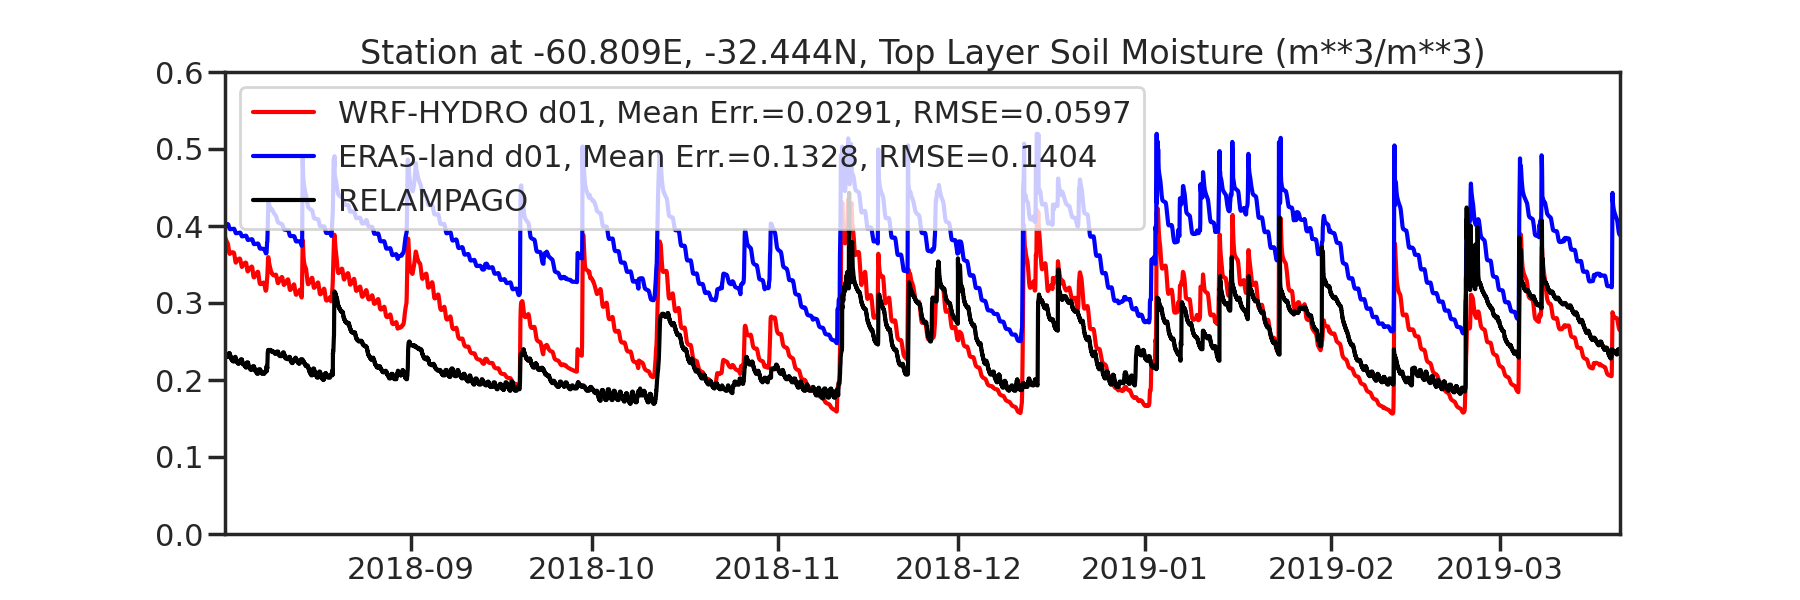 Soil moisture -60.809E -32.444N